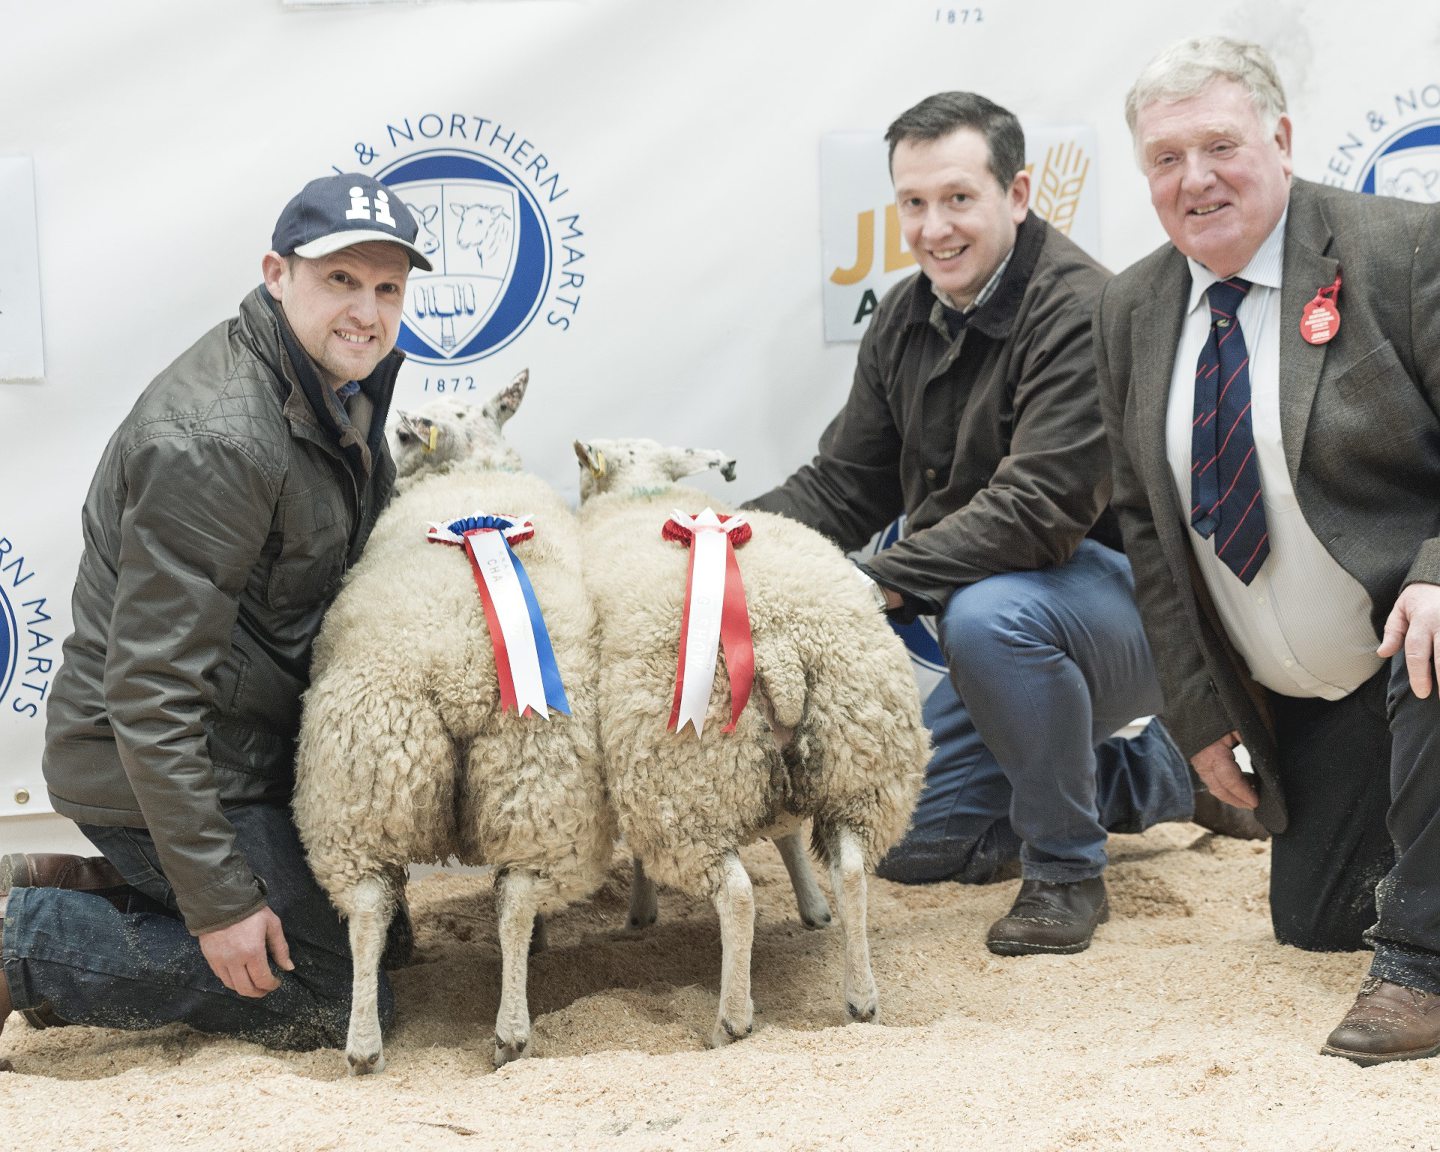 RNAS Spring Show: Sheep Park Farms and Cairness top sheep awards